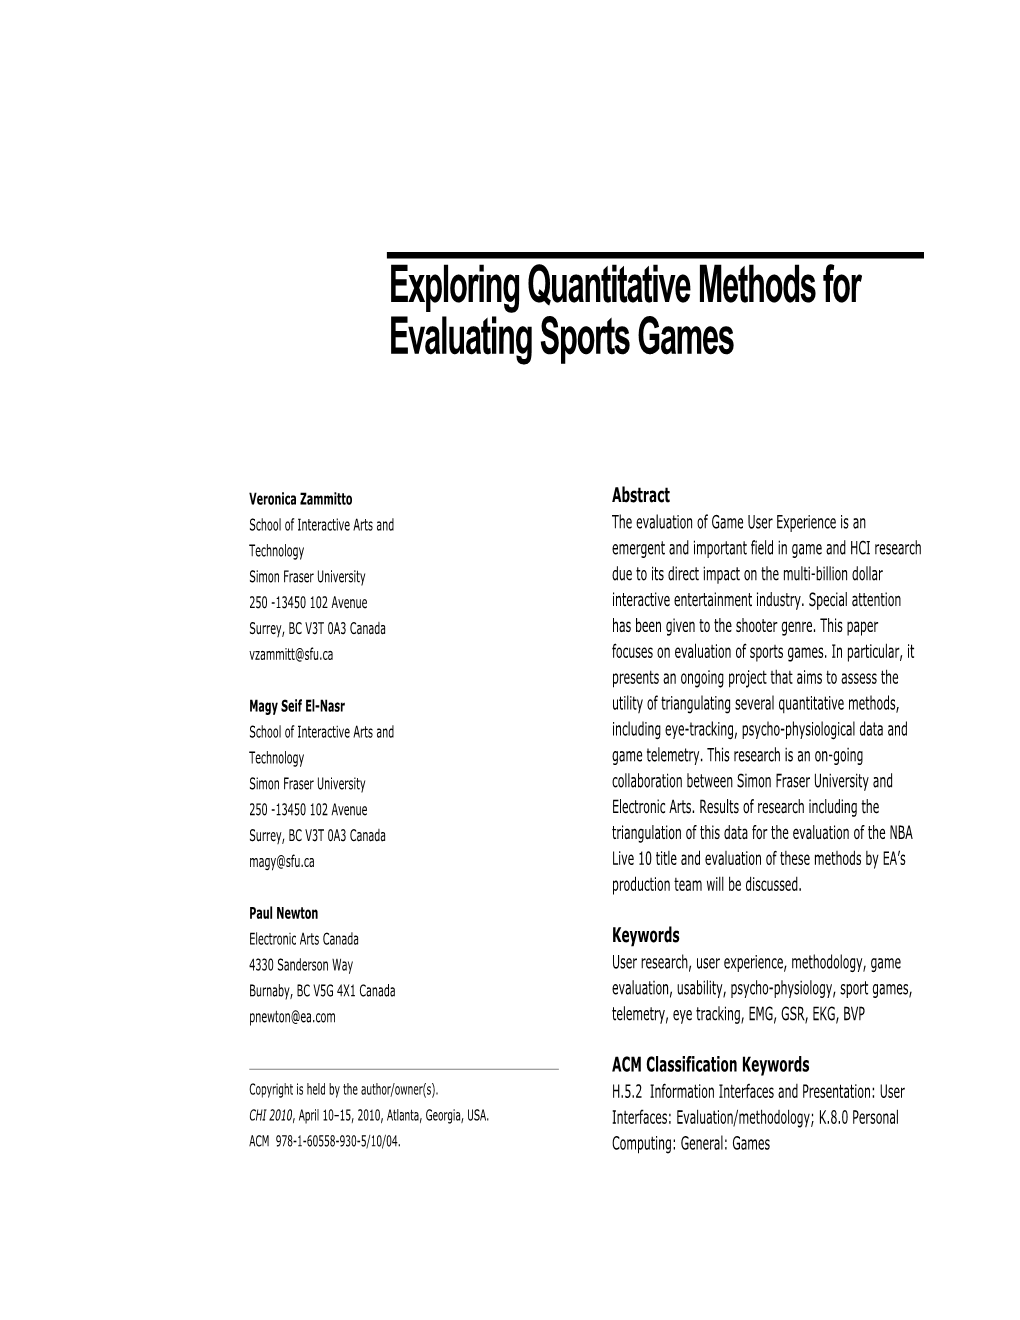 Exploring Quantitative Methods for Evaluating Sports Games